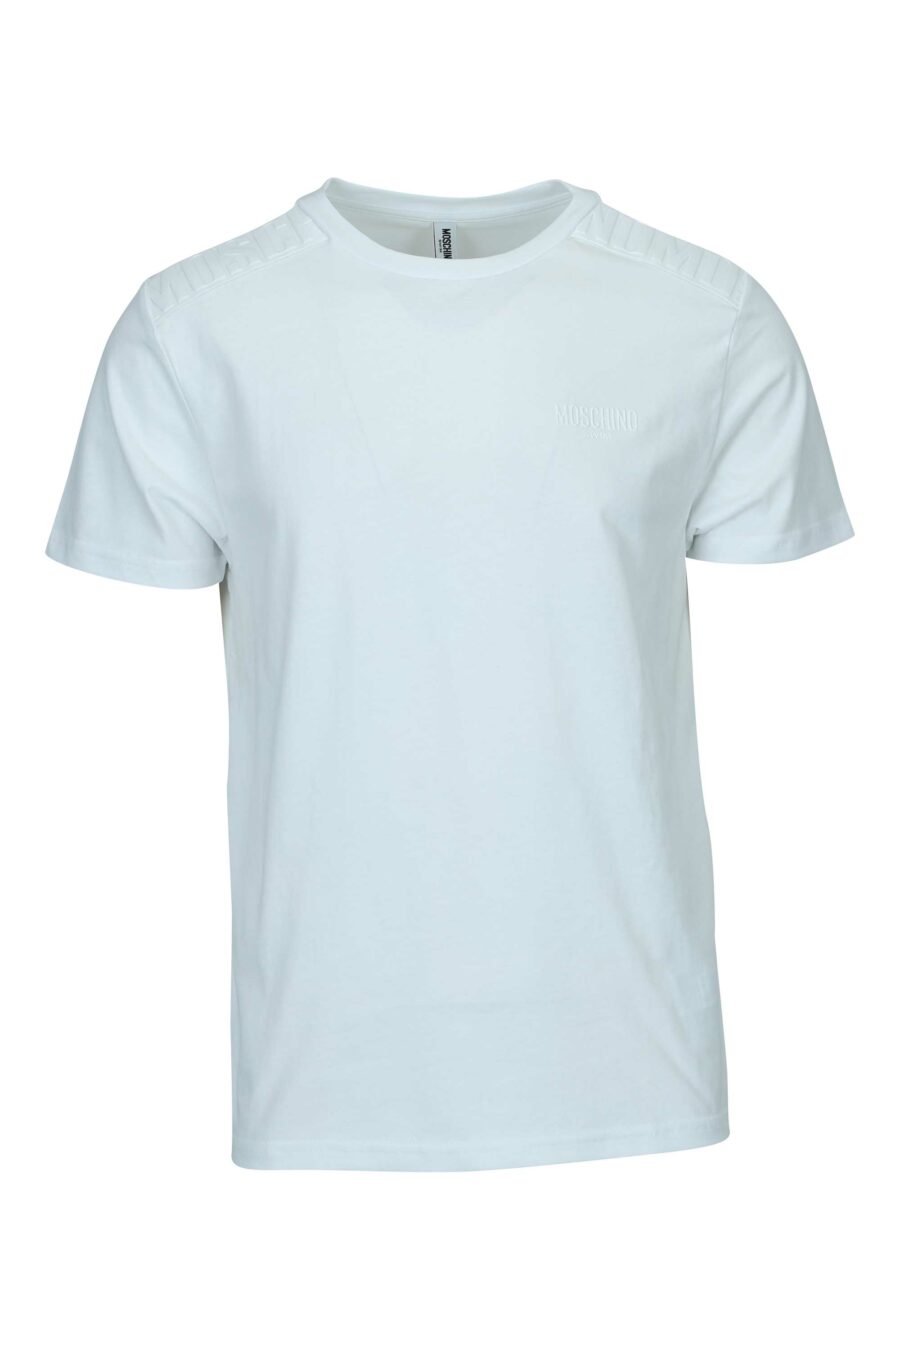 Weißes T-Shirt mit monochromem Gummilogo auf den Schultern - 667113671932